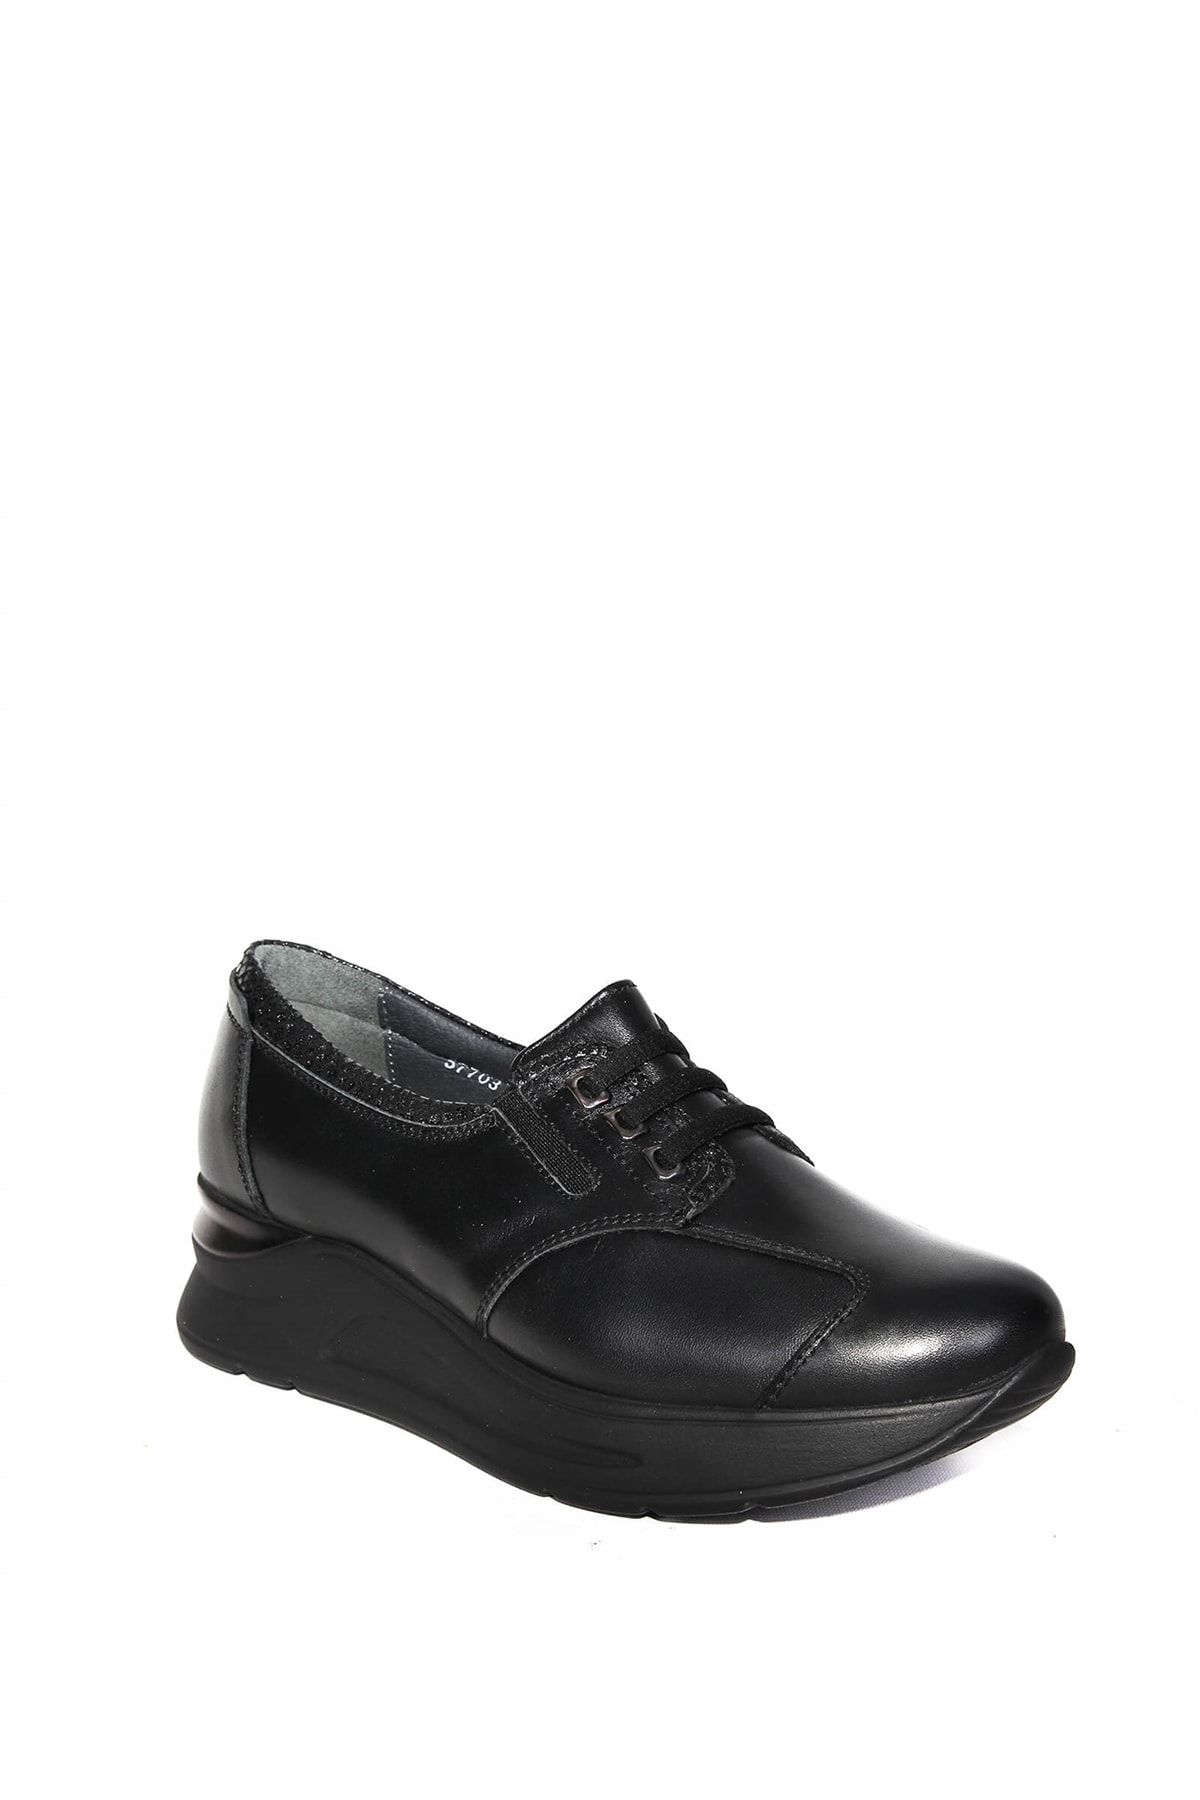 Forelli Vendy-h Comfort Kadın Ayakkabı Siyah